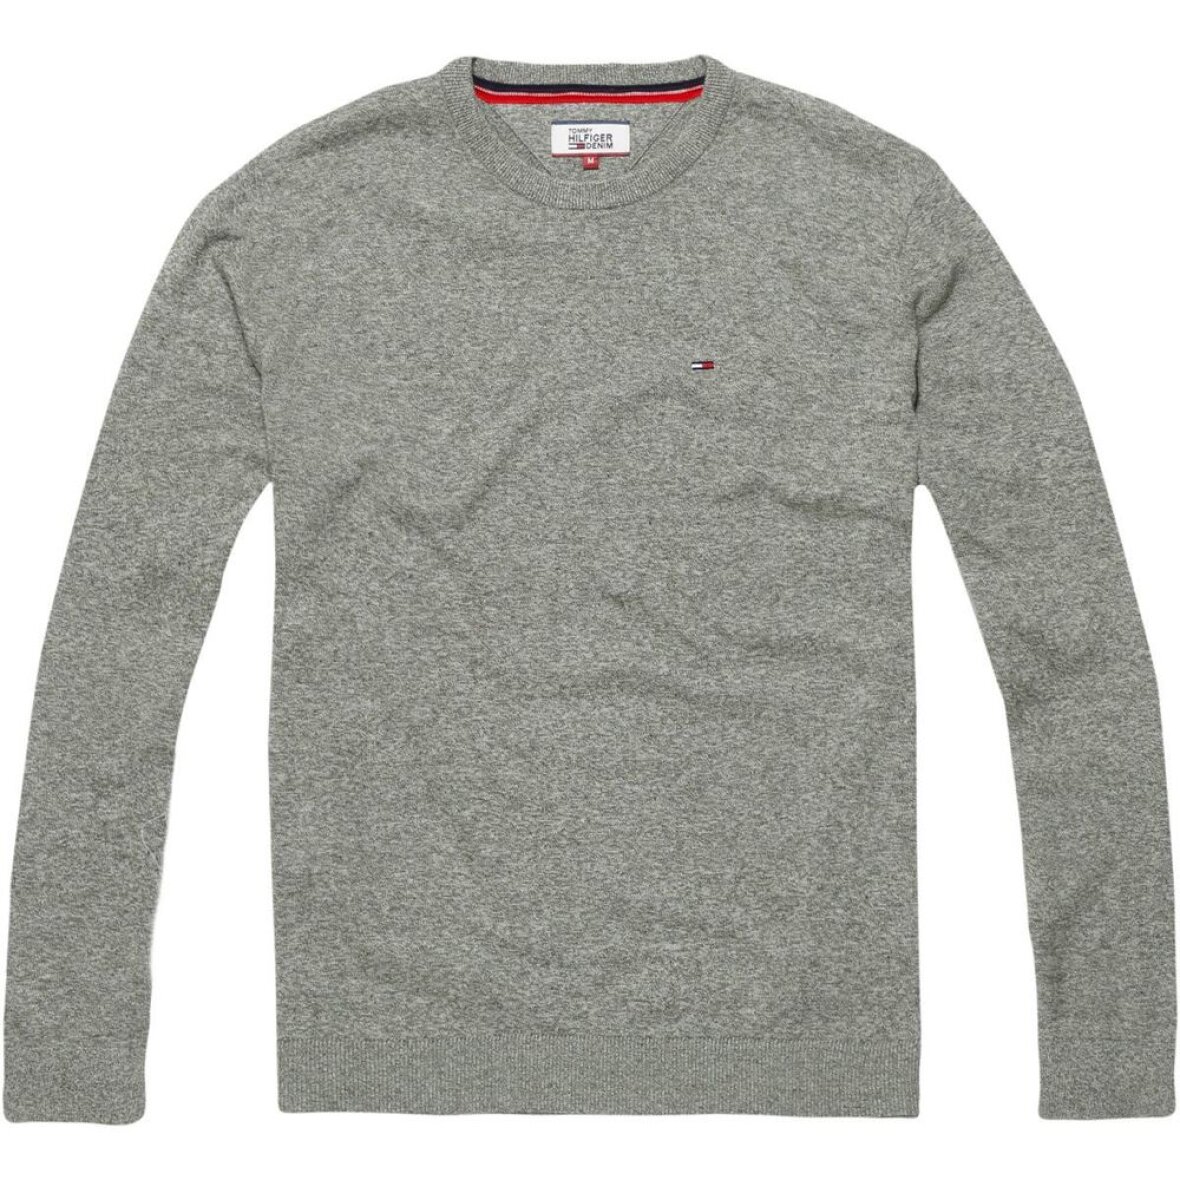 Baglæns Træde tilbage kaste støv i øjnene Tommy Jeans hilfiger strik basic sweater11 - Shop online nu